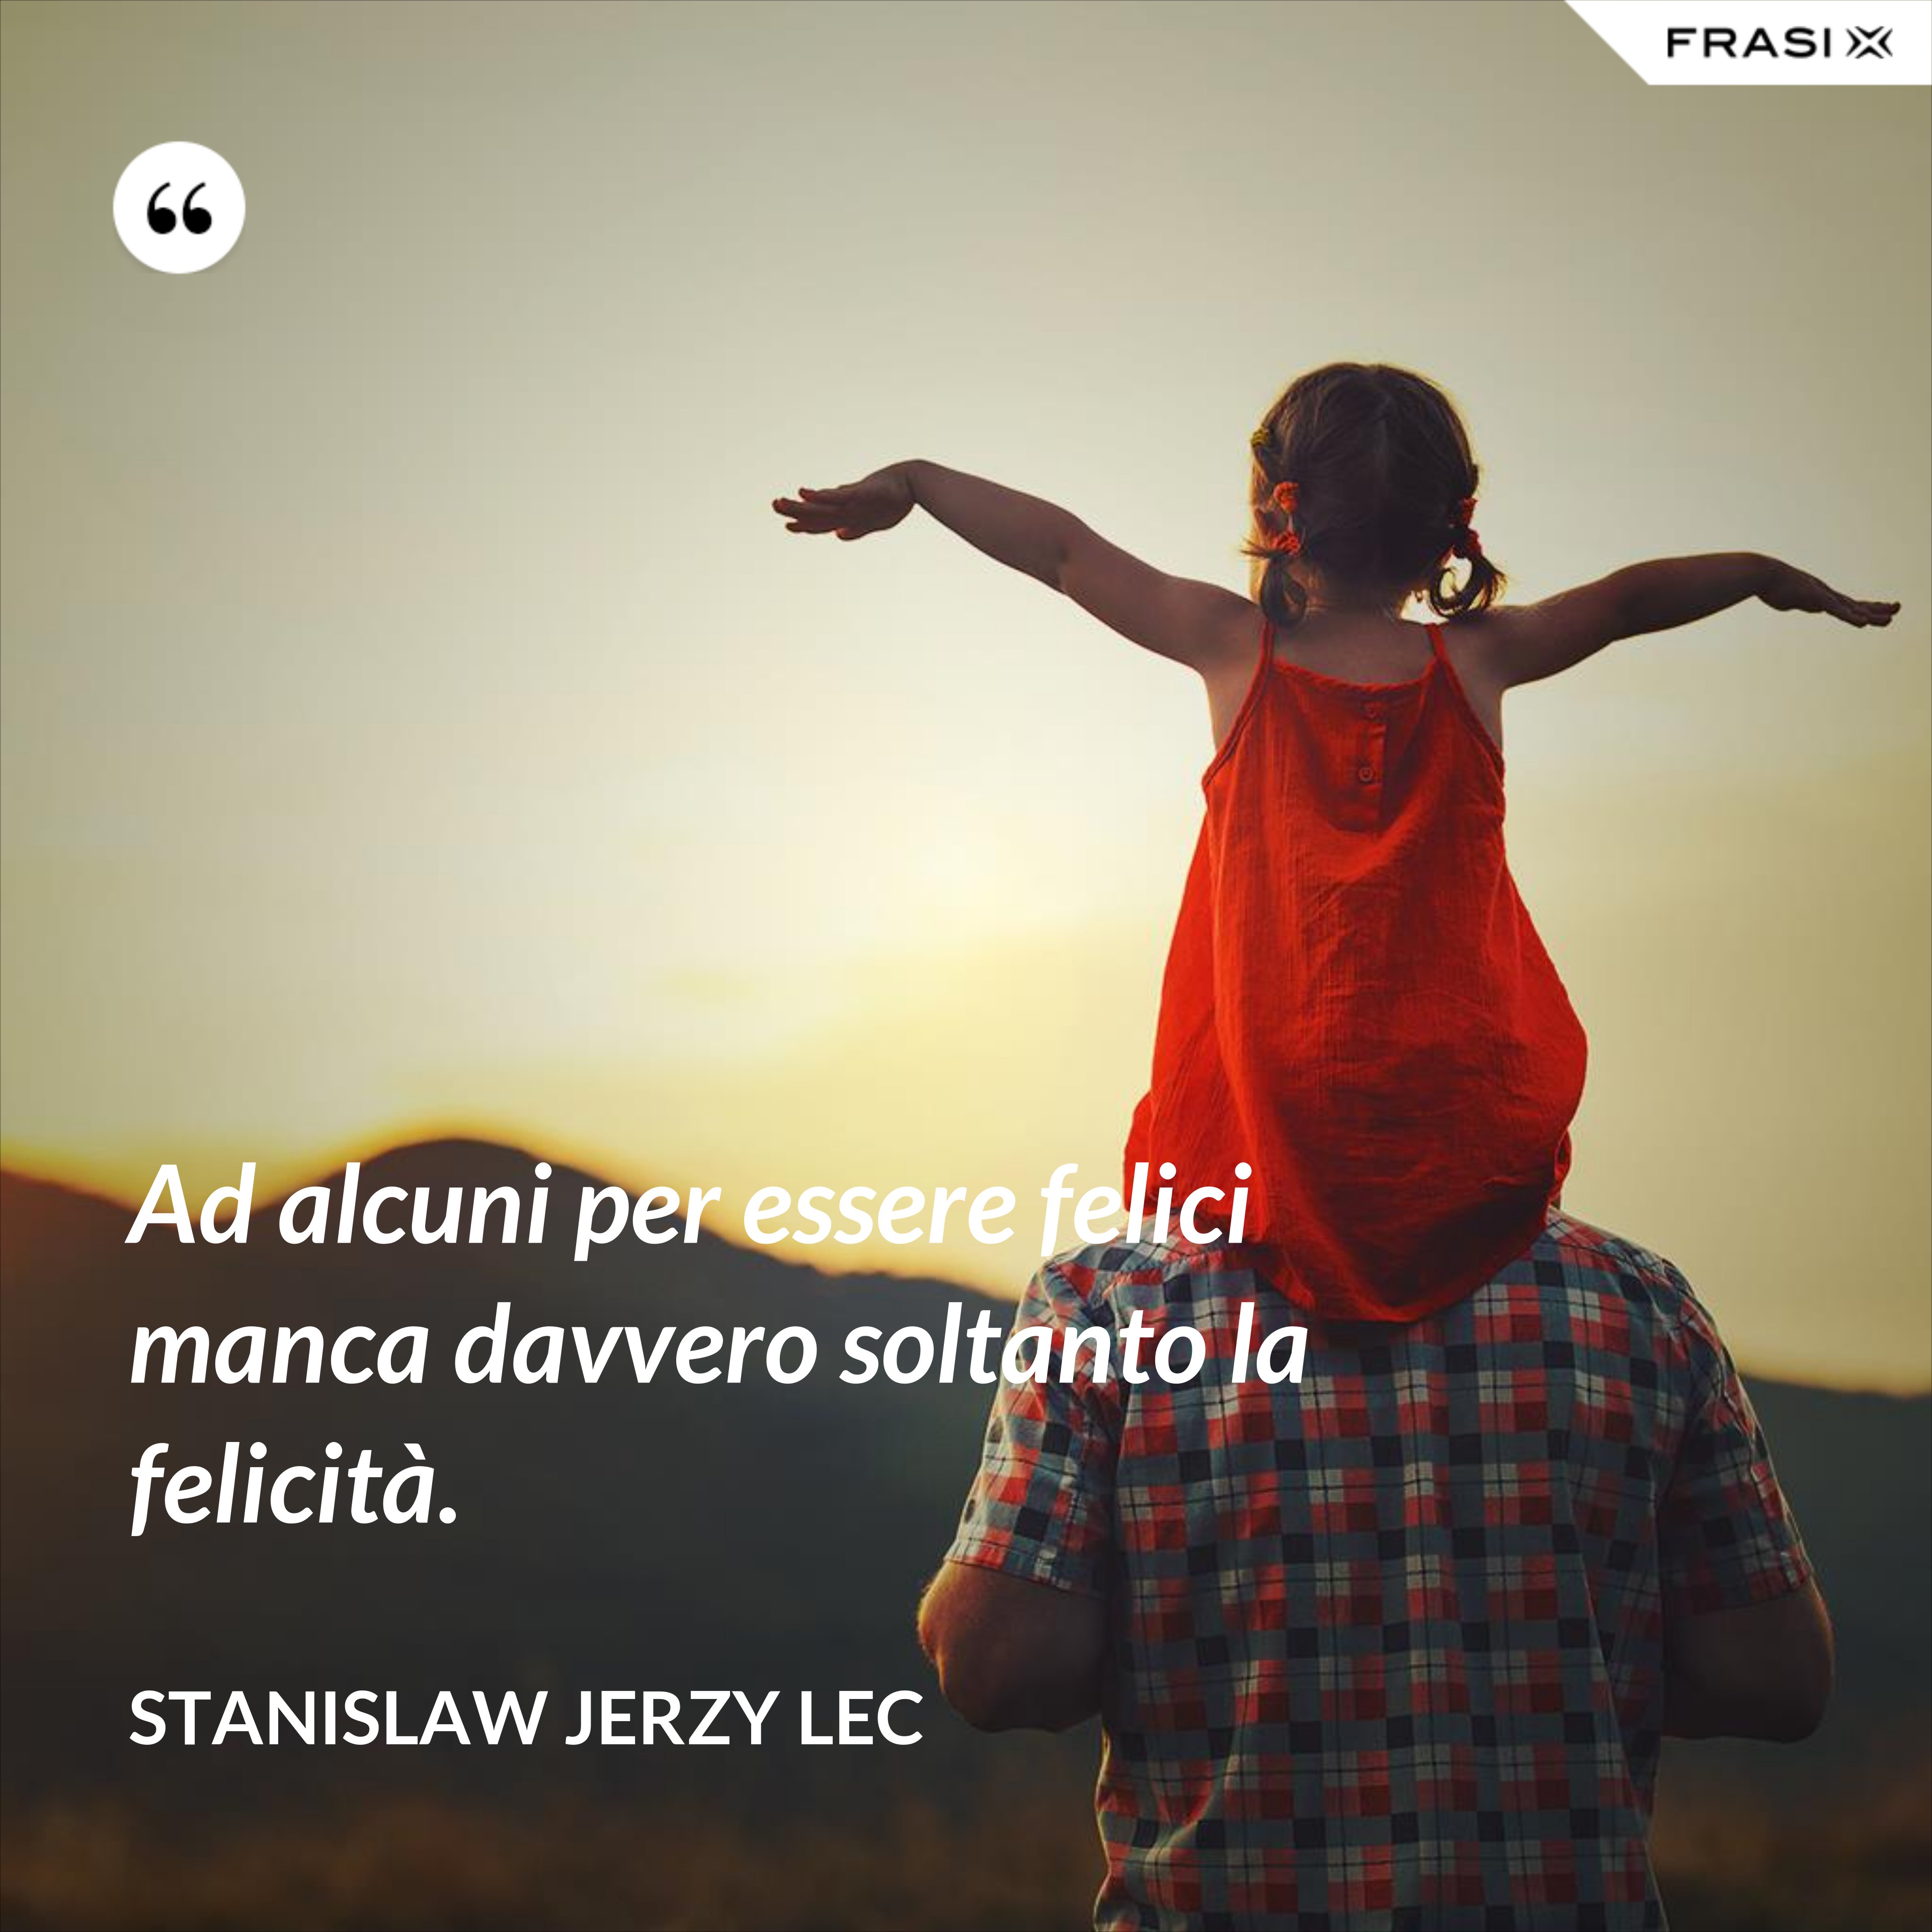 Ad alcuni per essere felici manca davvero soltanto la felicità. - Stanislaw Jerzy Lec